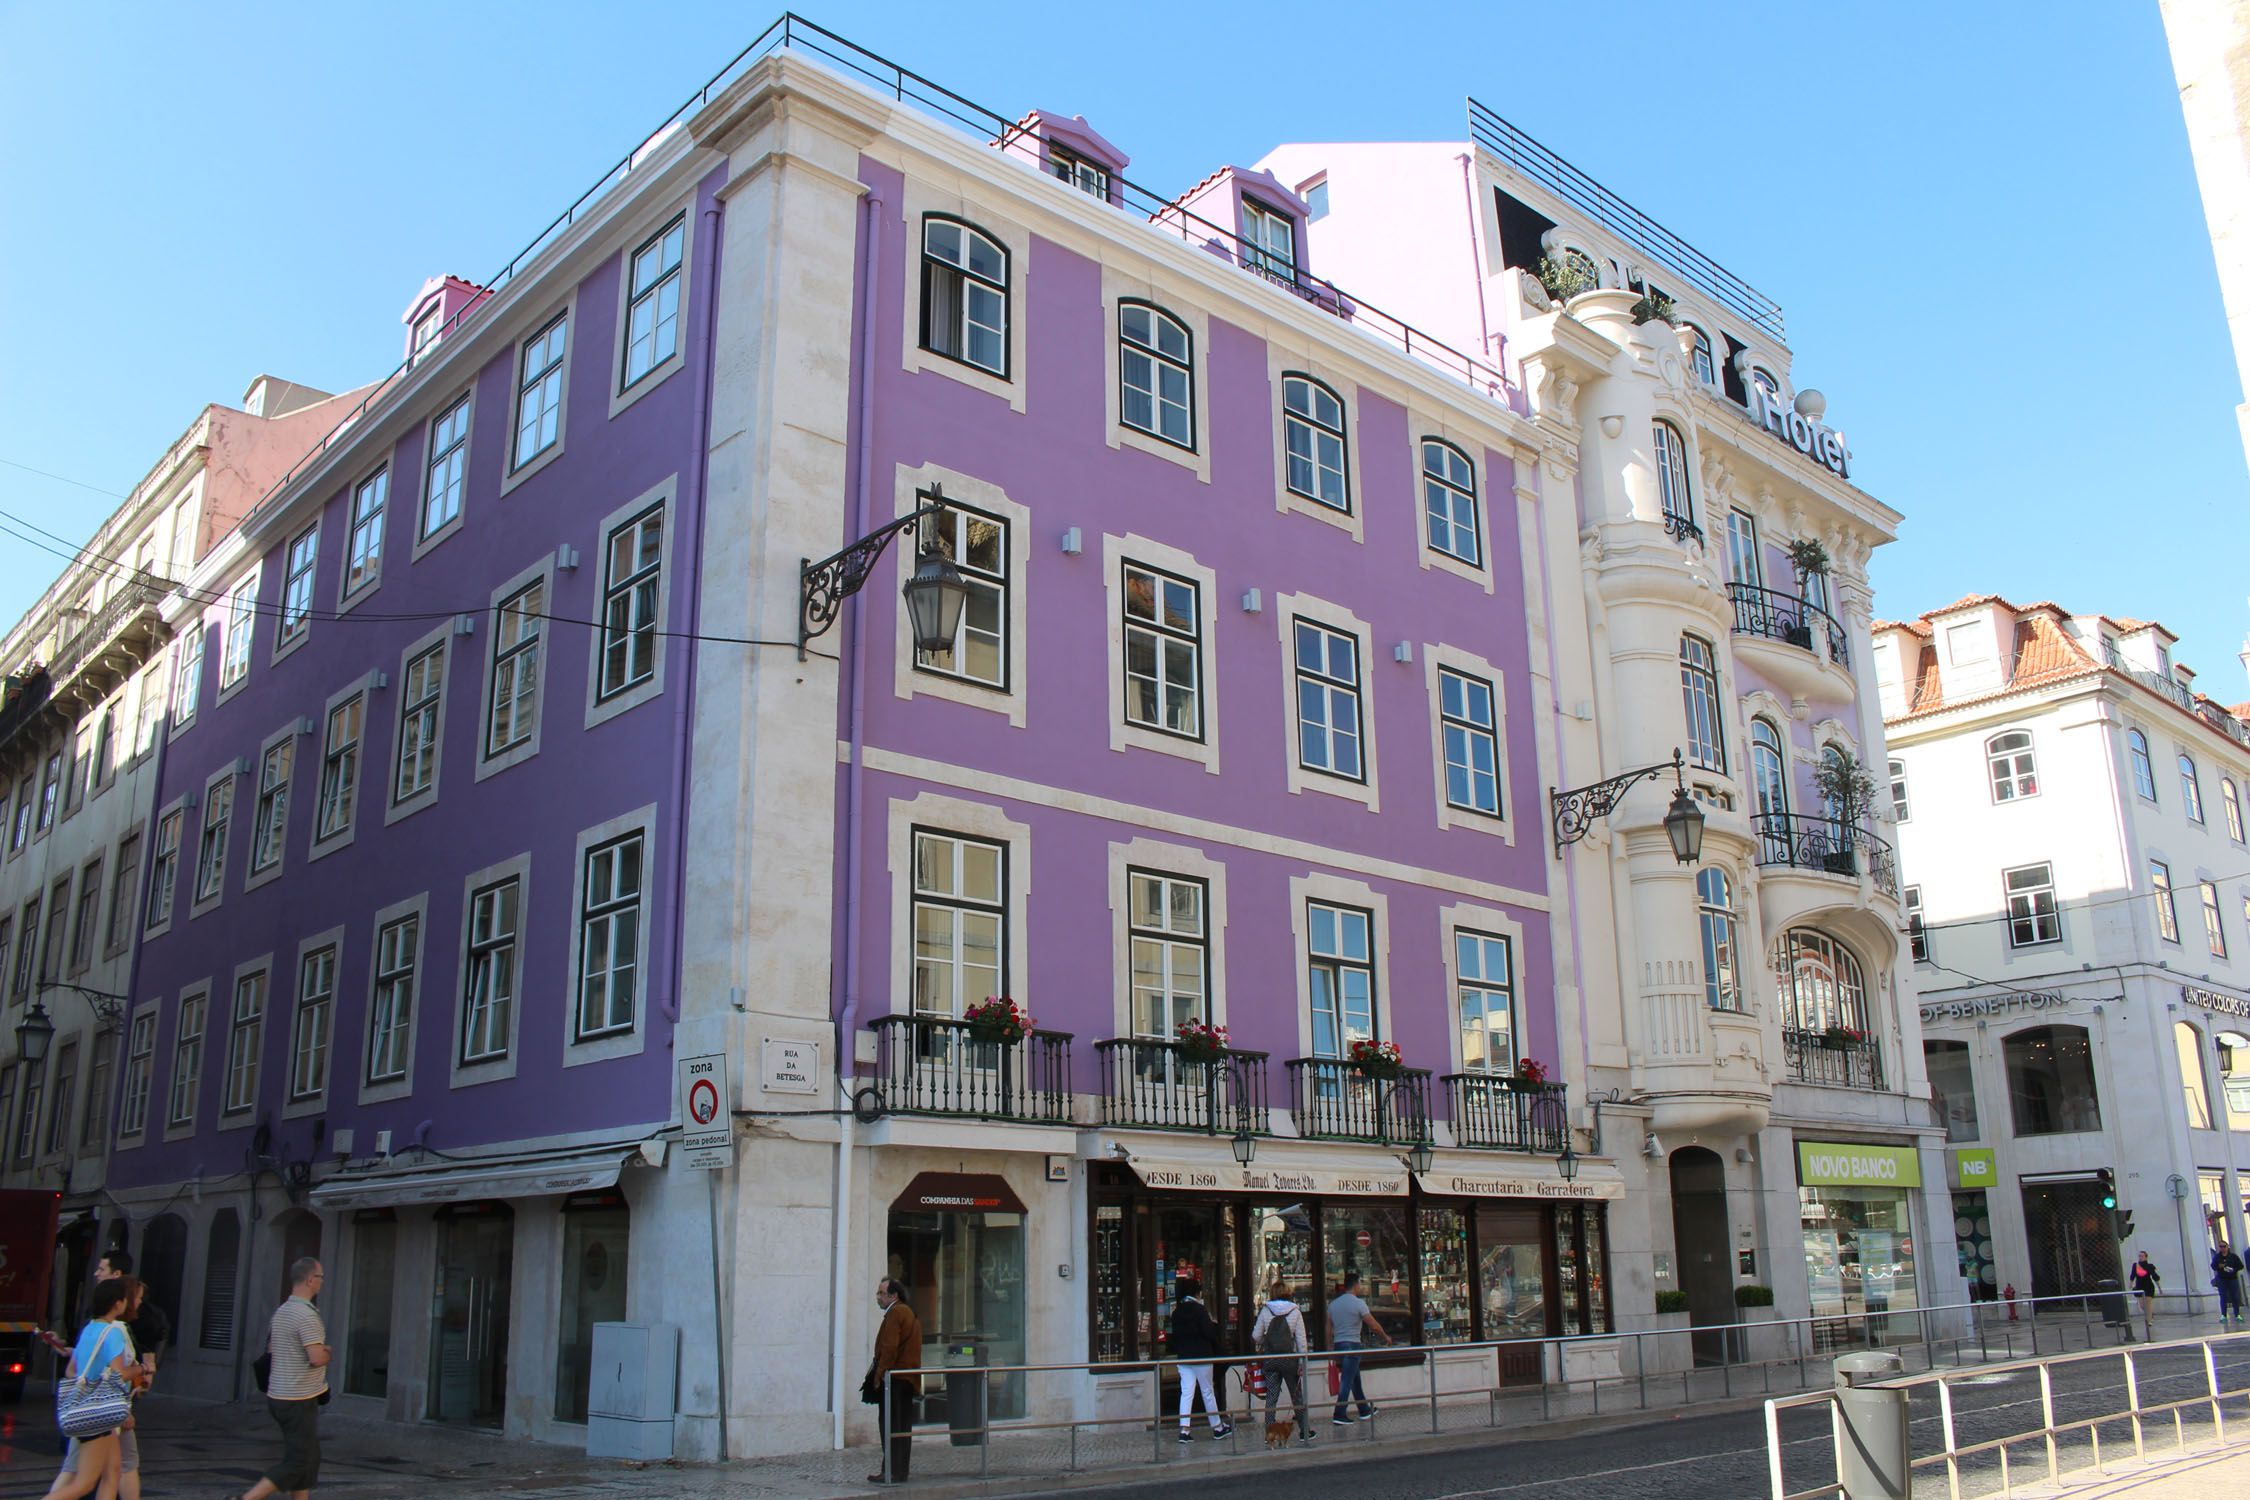 Lisbonne, Plaça da Figueira, immeuble